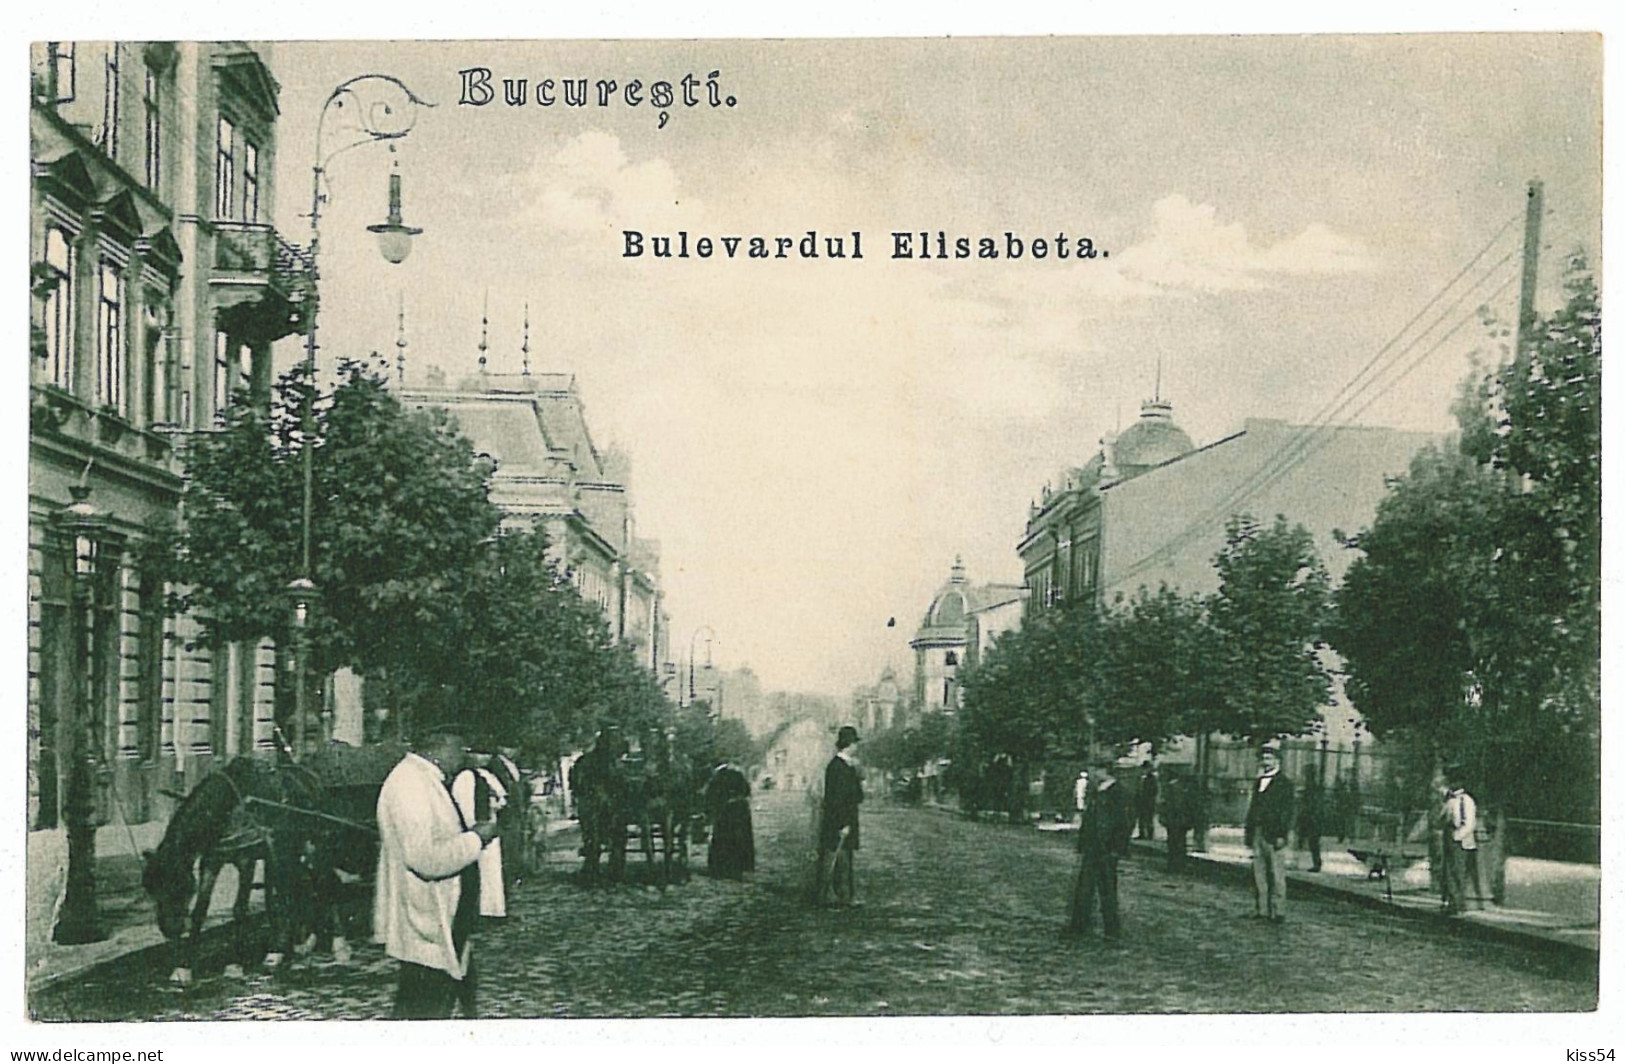 RO 52 - 3875 BUCURESTI,  Elisabeta Ave. Romania - Old Postcard - Unused - Rumania